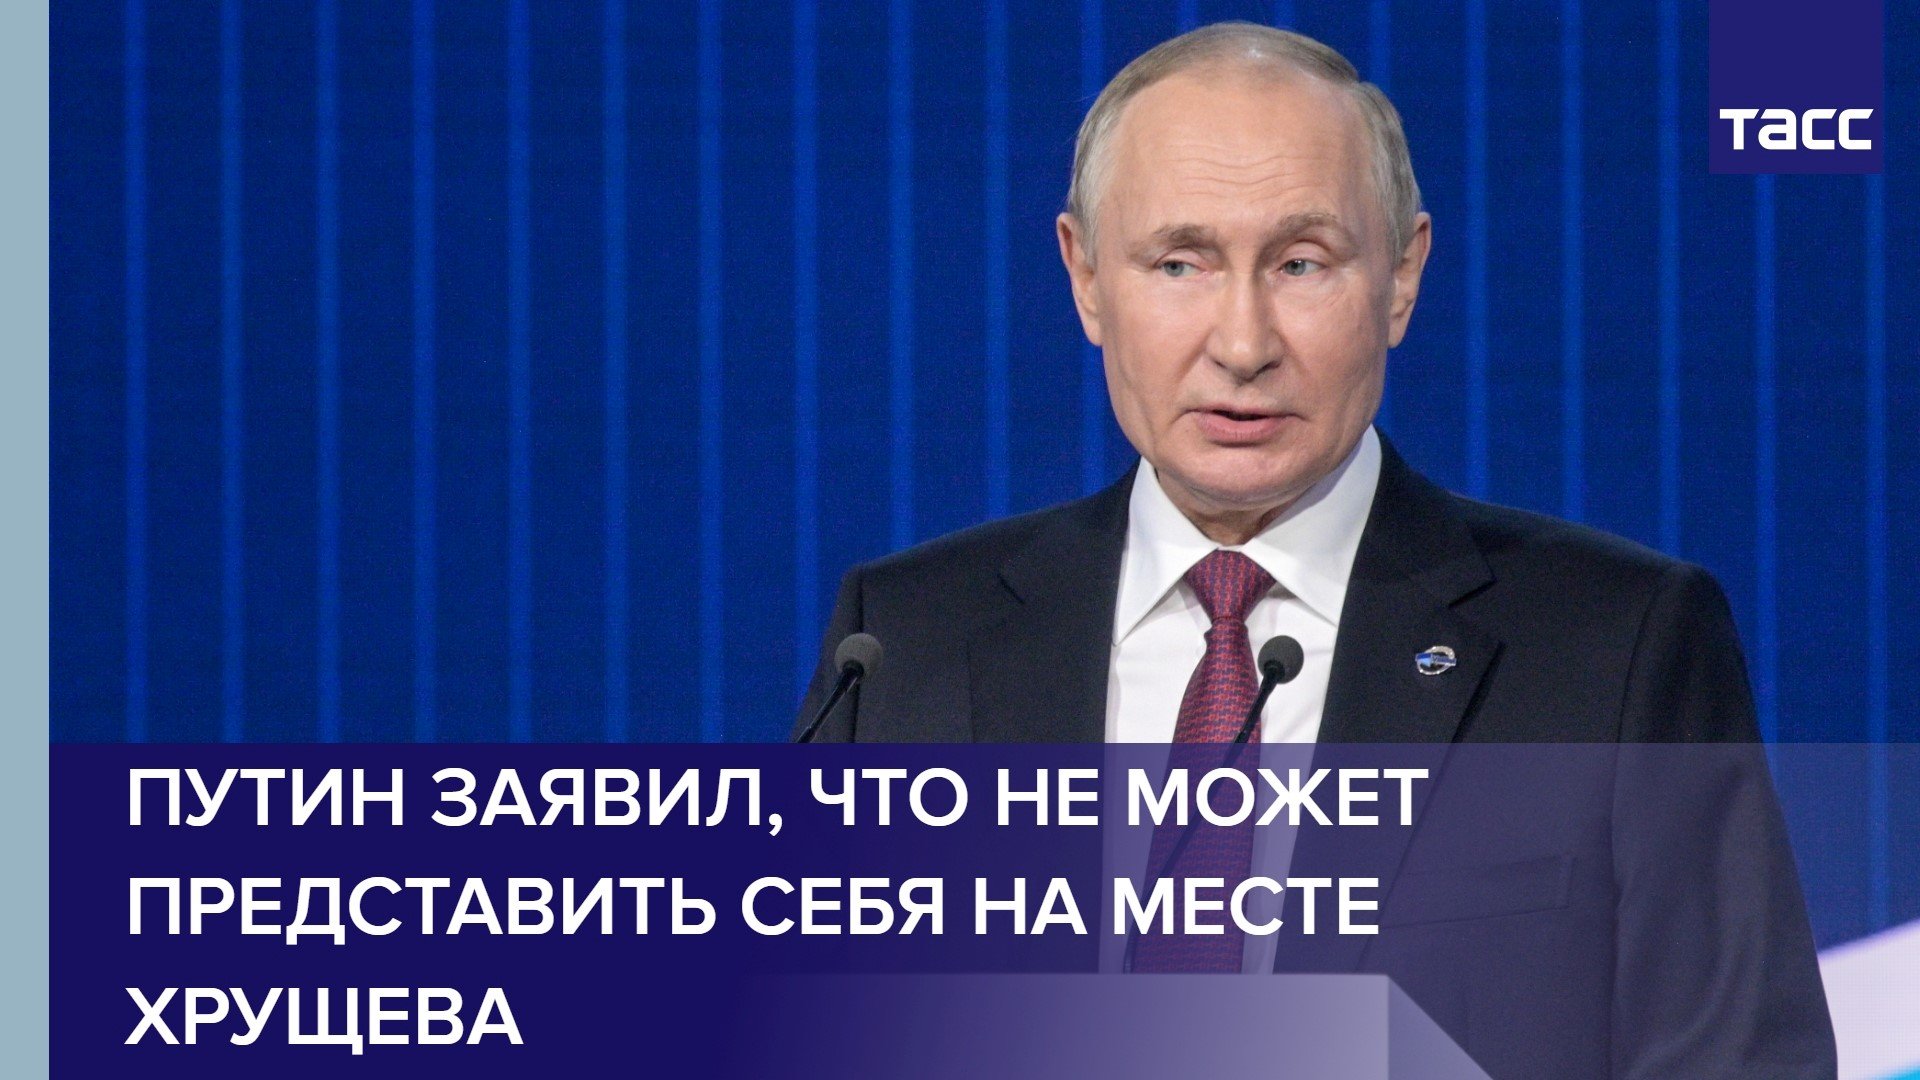 Путин заявил, что не может представить себя на месте Хрущева #shorts